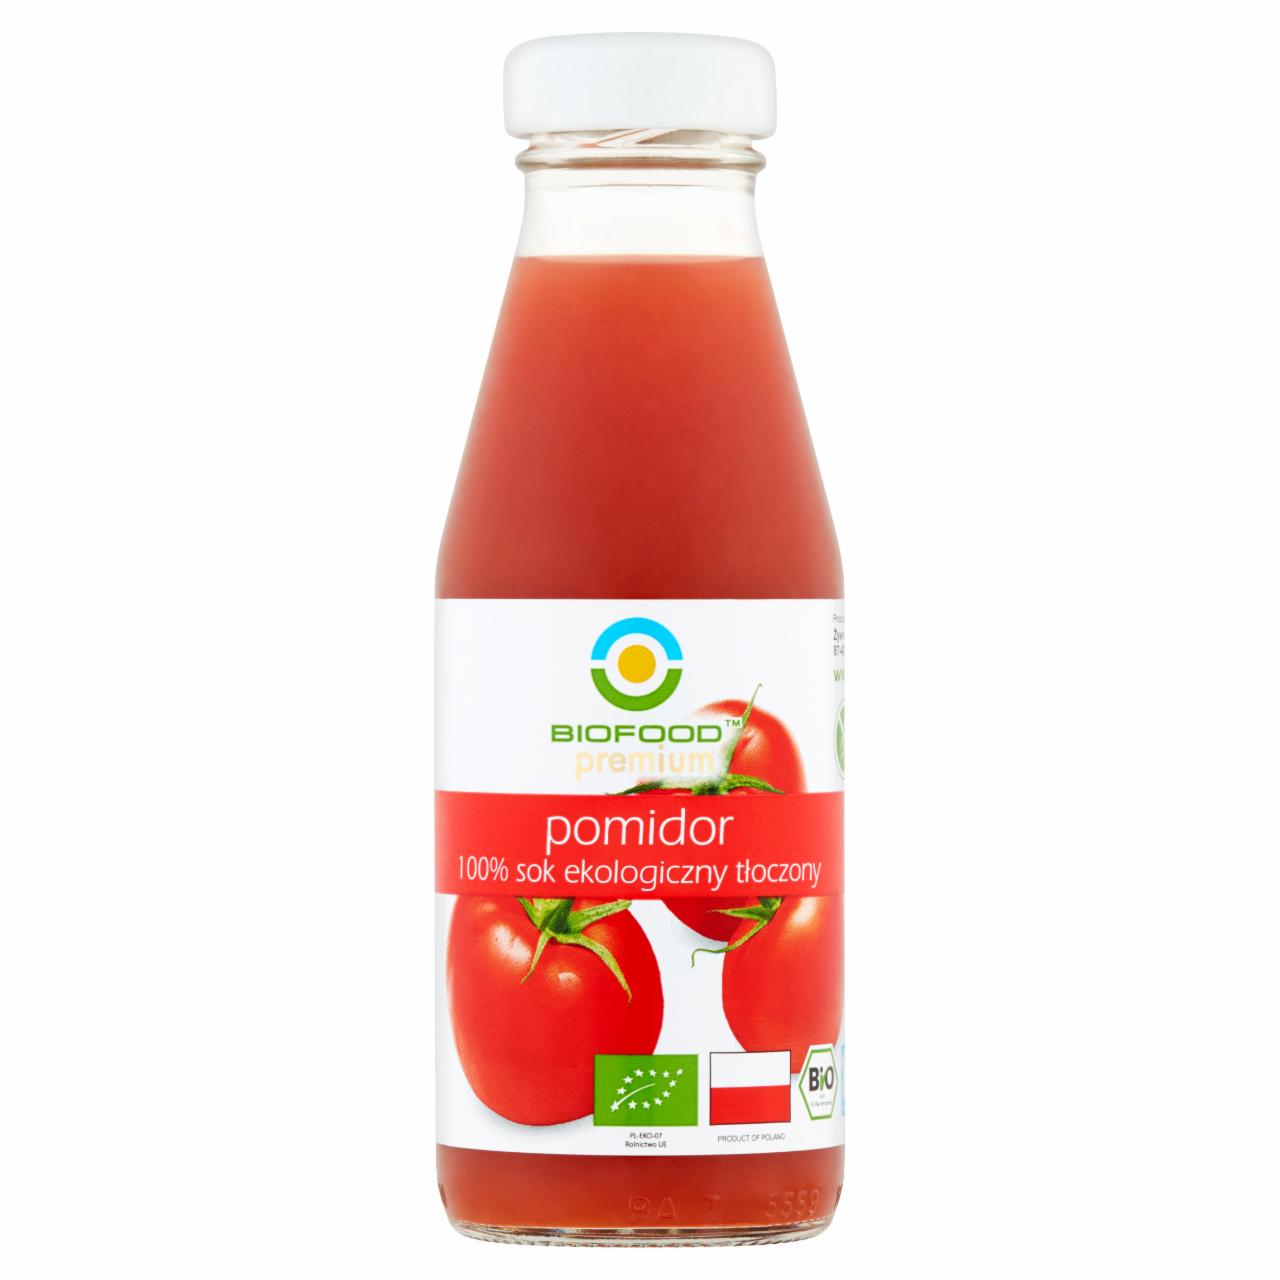 Zdjęcia - BioFood Premium Sok 100% ekologiczny tłoczony pomidor 200 ml